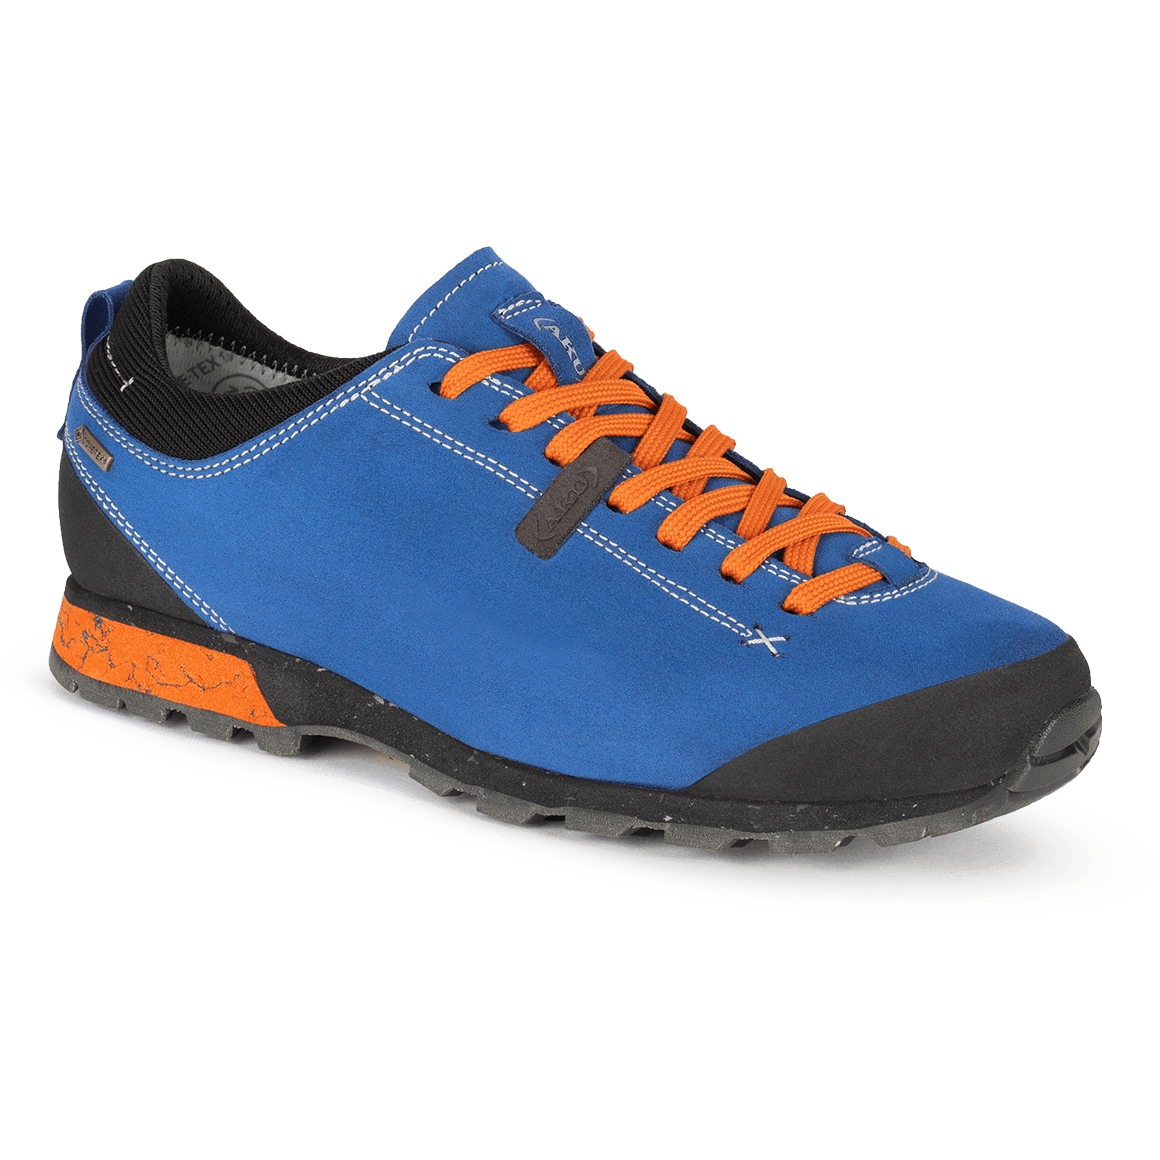 Productfoto van AKU Bellamont 3 V-Light GTX Schoenen Heren - blauw-oranje